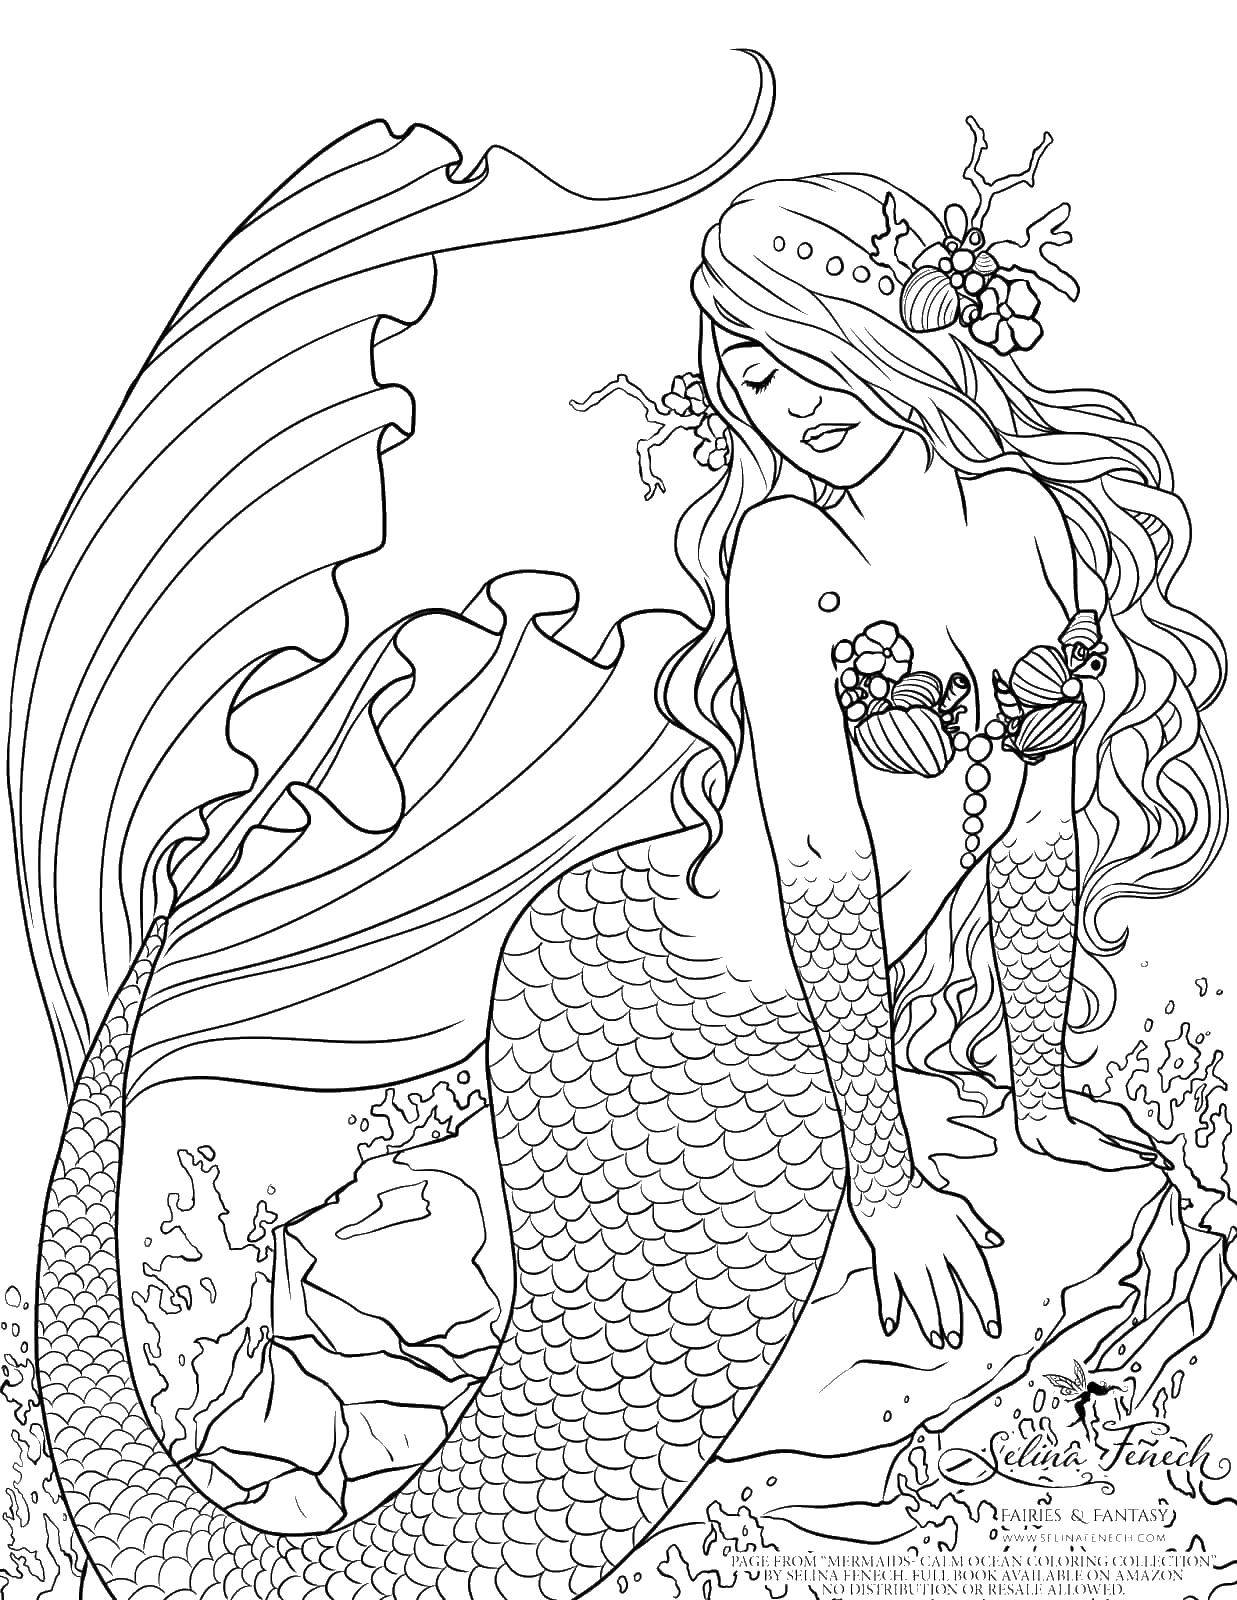 Coloring Mermaid. Category The little mermaid. Tags:  mermaid, sea, water.